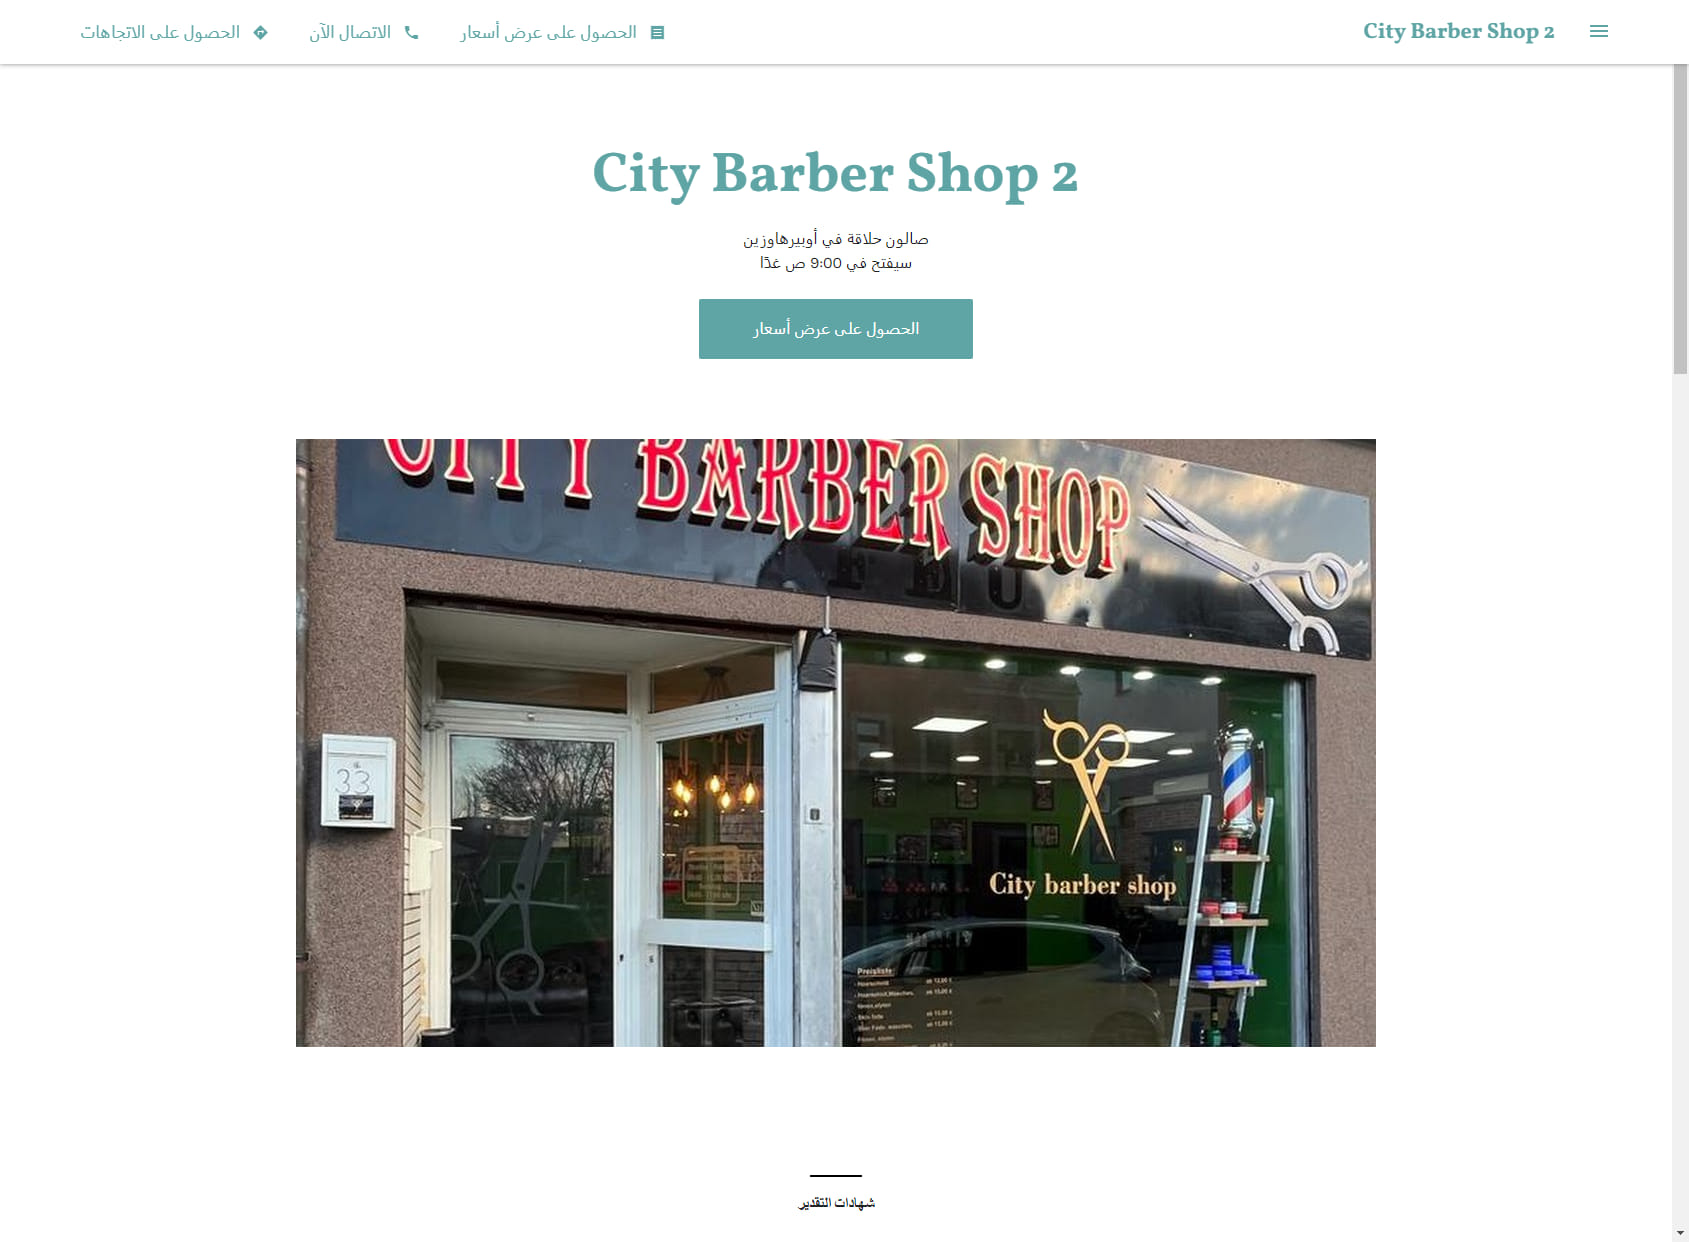 City Barber Shop 2